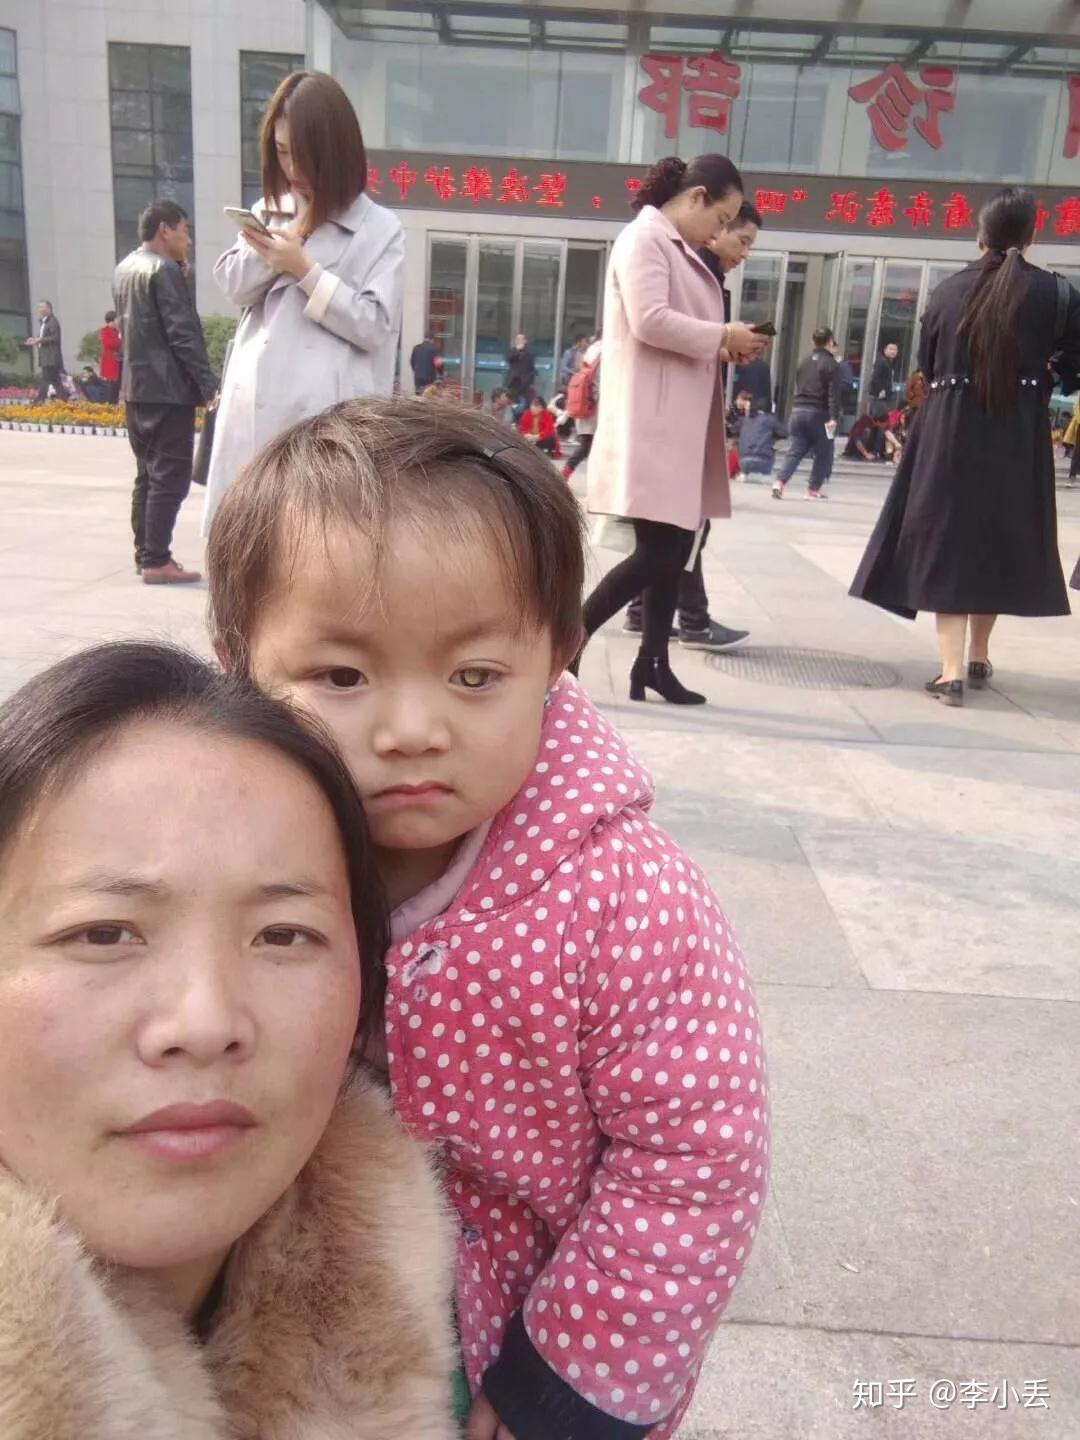 如何看待王凤雅小朋友父母骗捐后对其放弃治疗